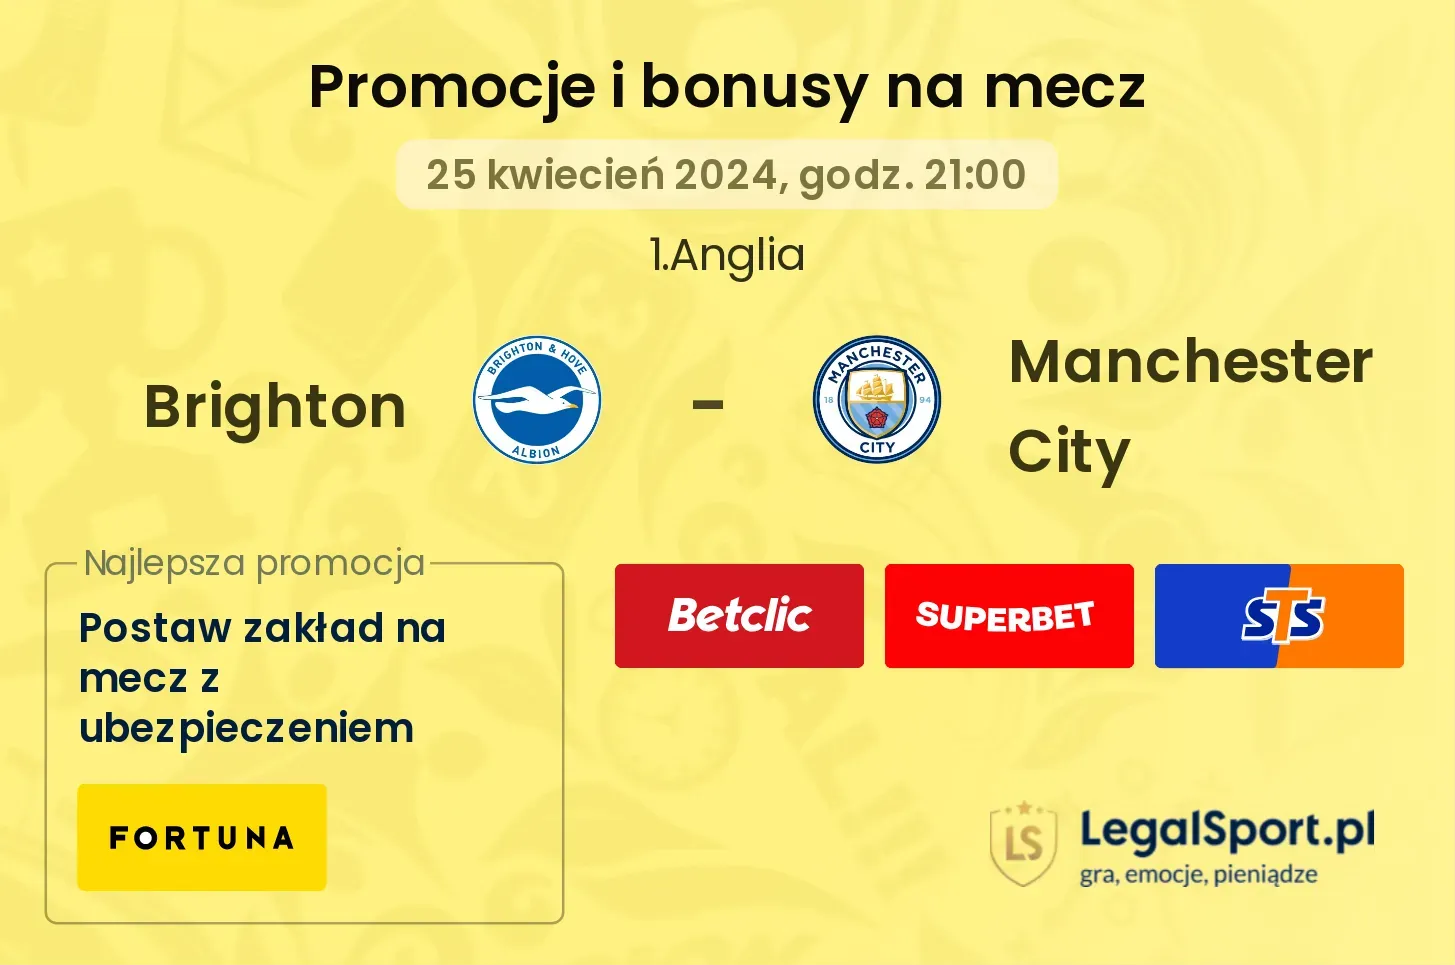 Brighton - Manchester City promocje bonusy na mecz